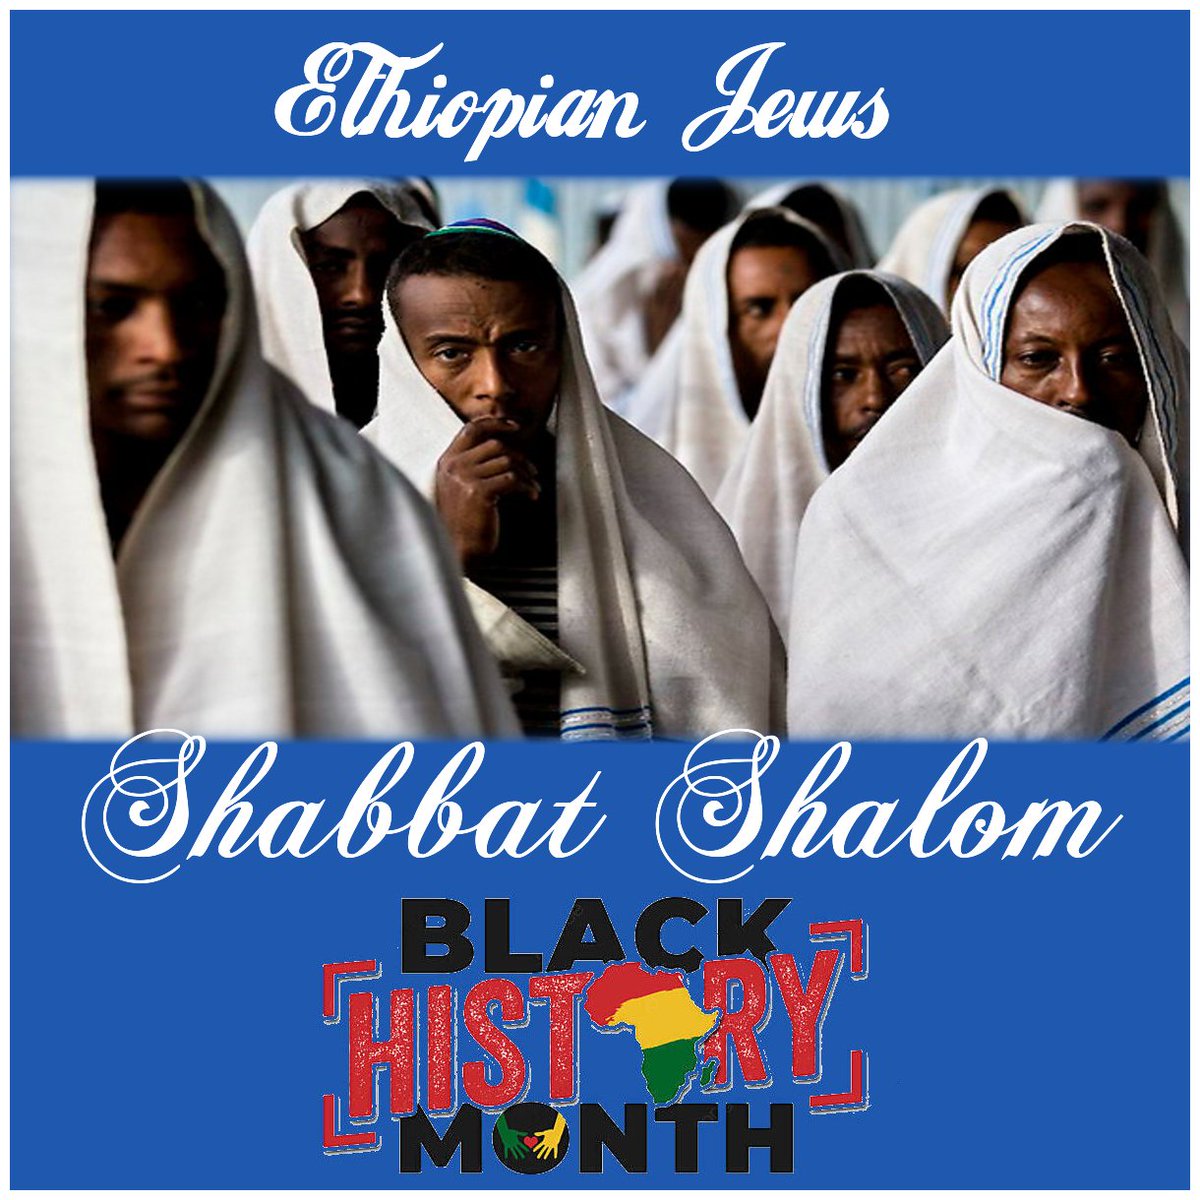 #BetaIsrael 

#EthiopianJews 

#BlackHistoryMonth